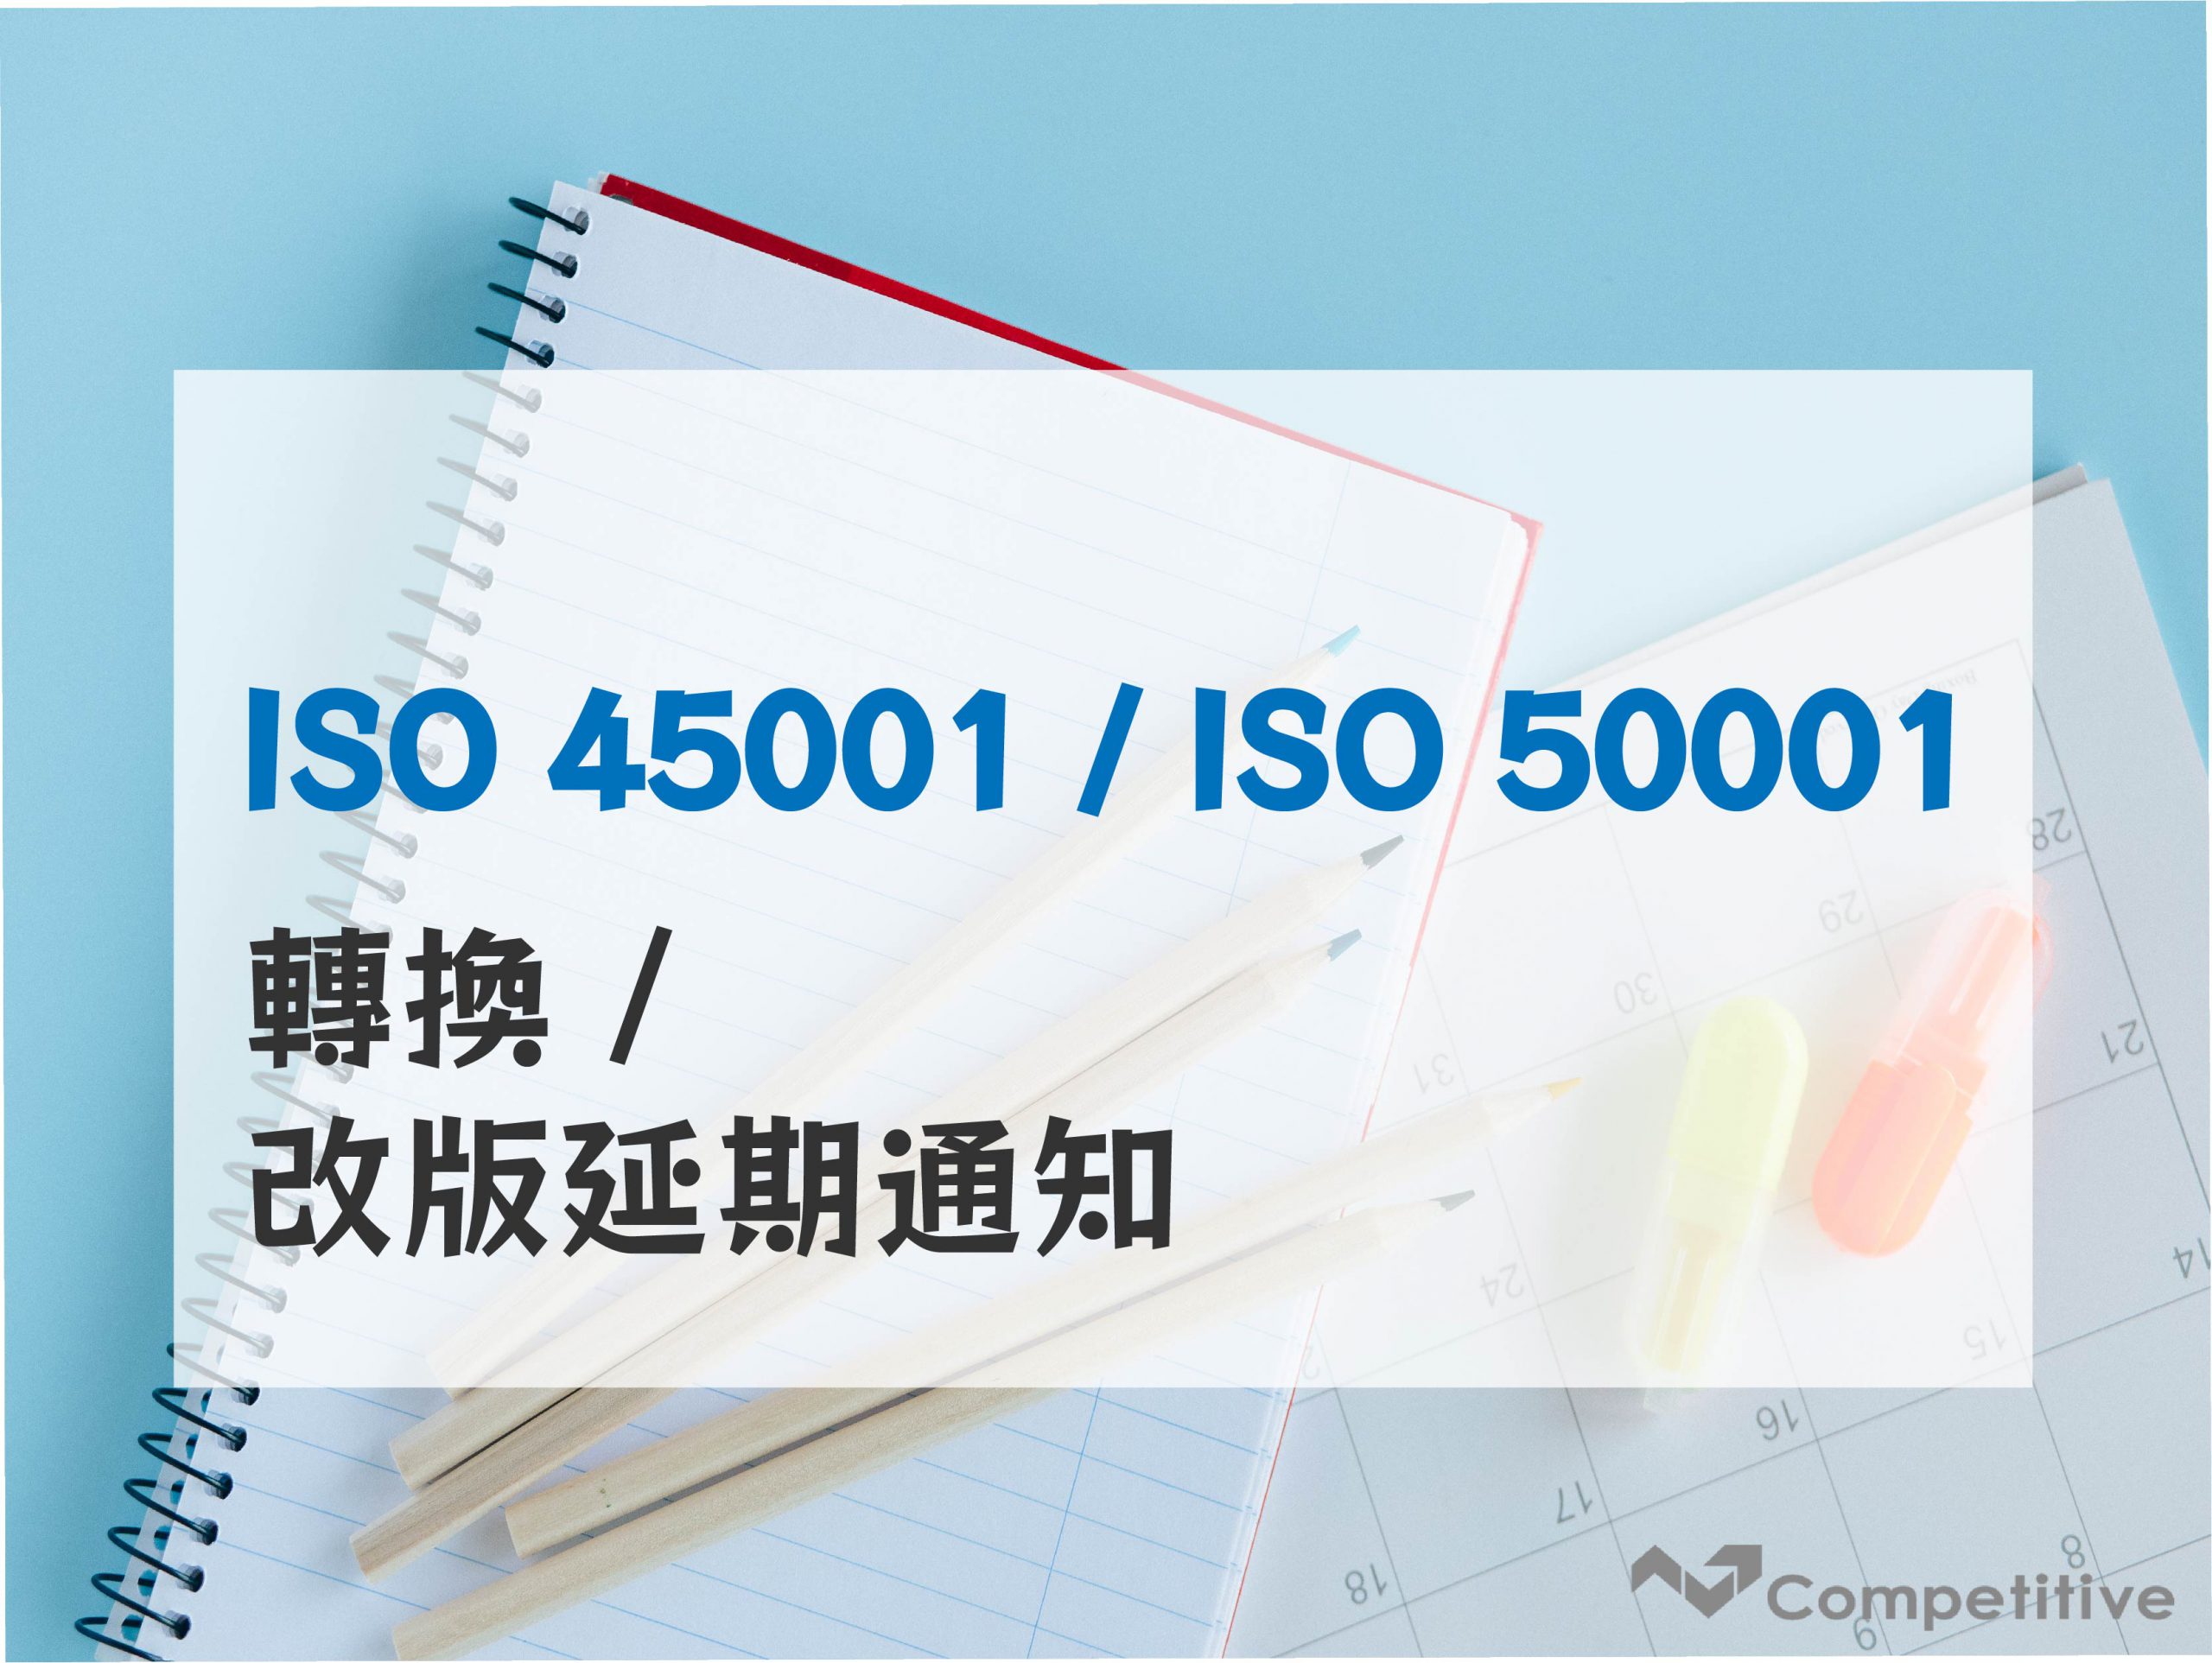 ISO 轉版- ISO 45001（原OHSAS 18001）、ISO 50001 新版轉換/改版期限 